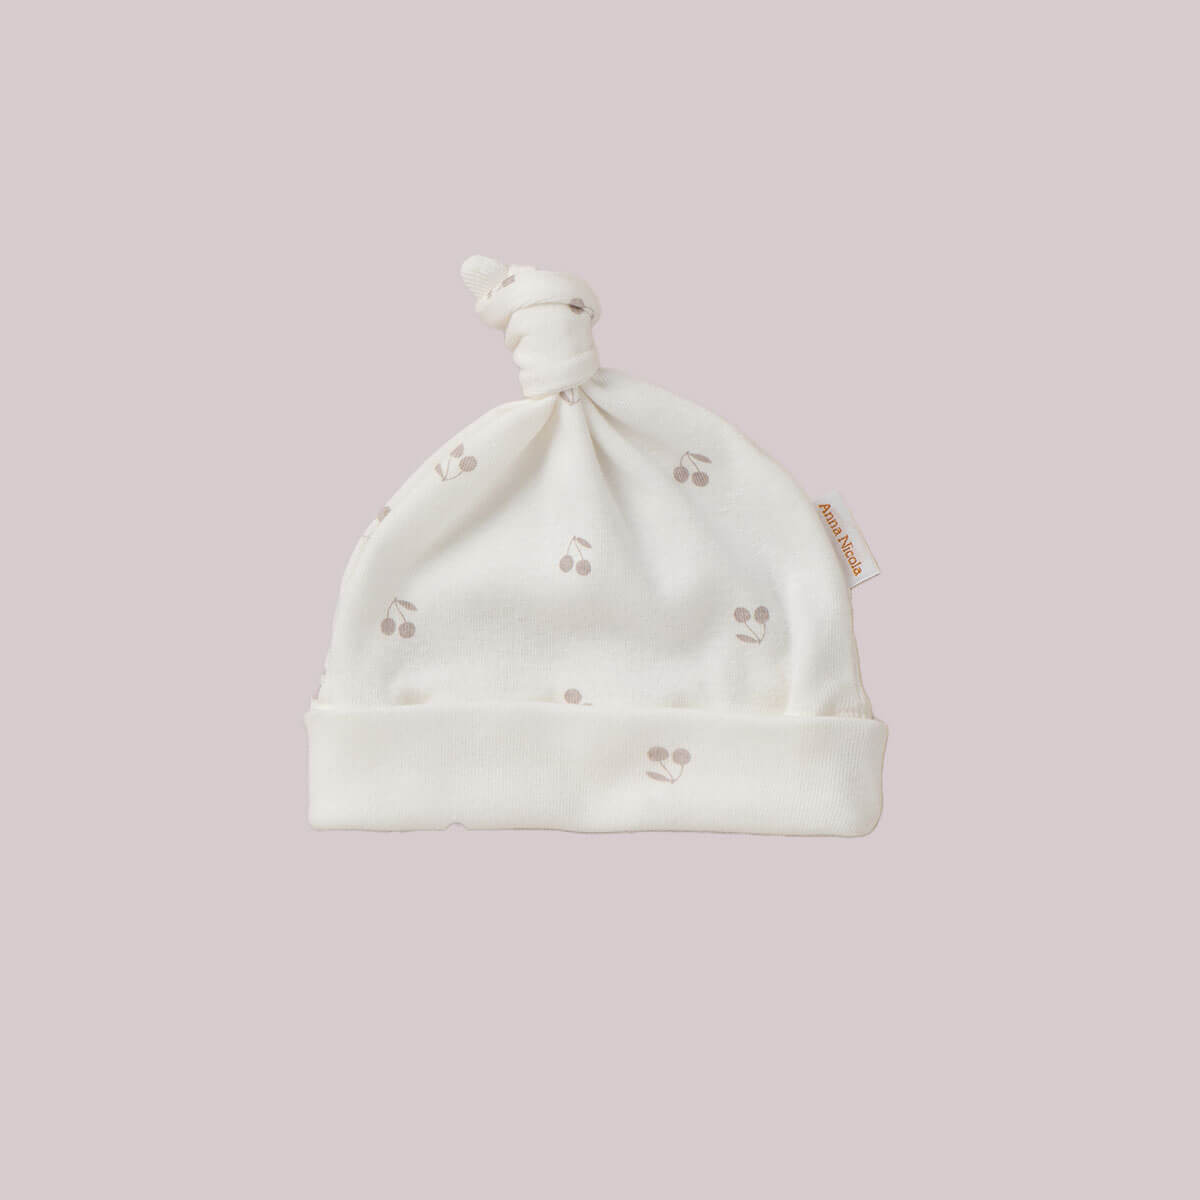 キュッと結んだデザインが愛らしい帽子まだ自分で体温調節ができない赤ちゃんの保温と、頭の保護に。